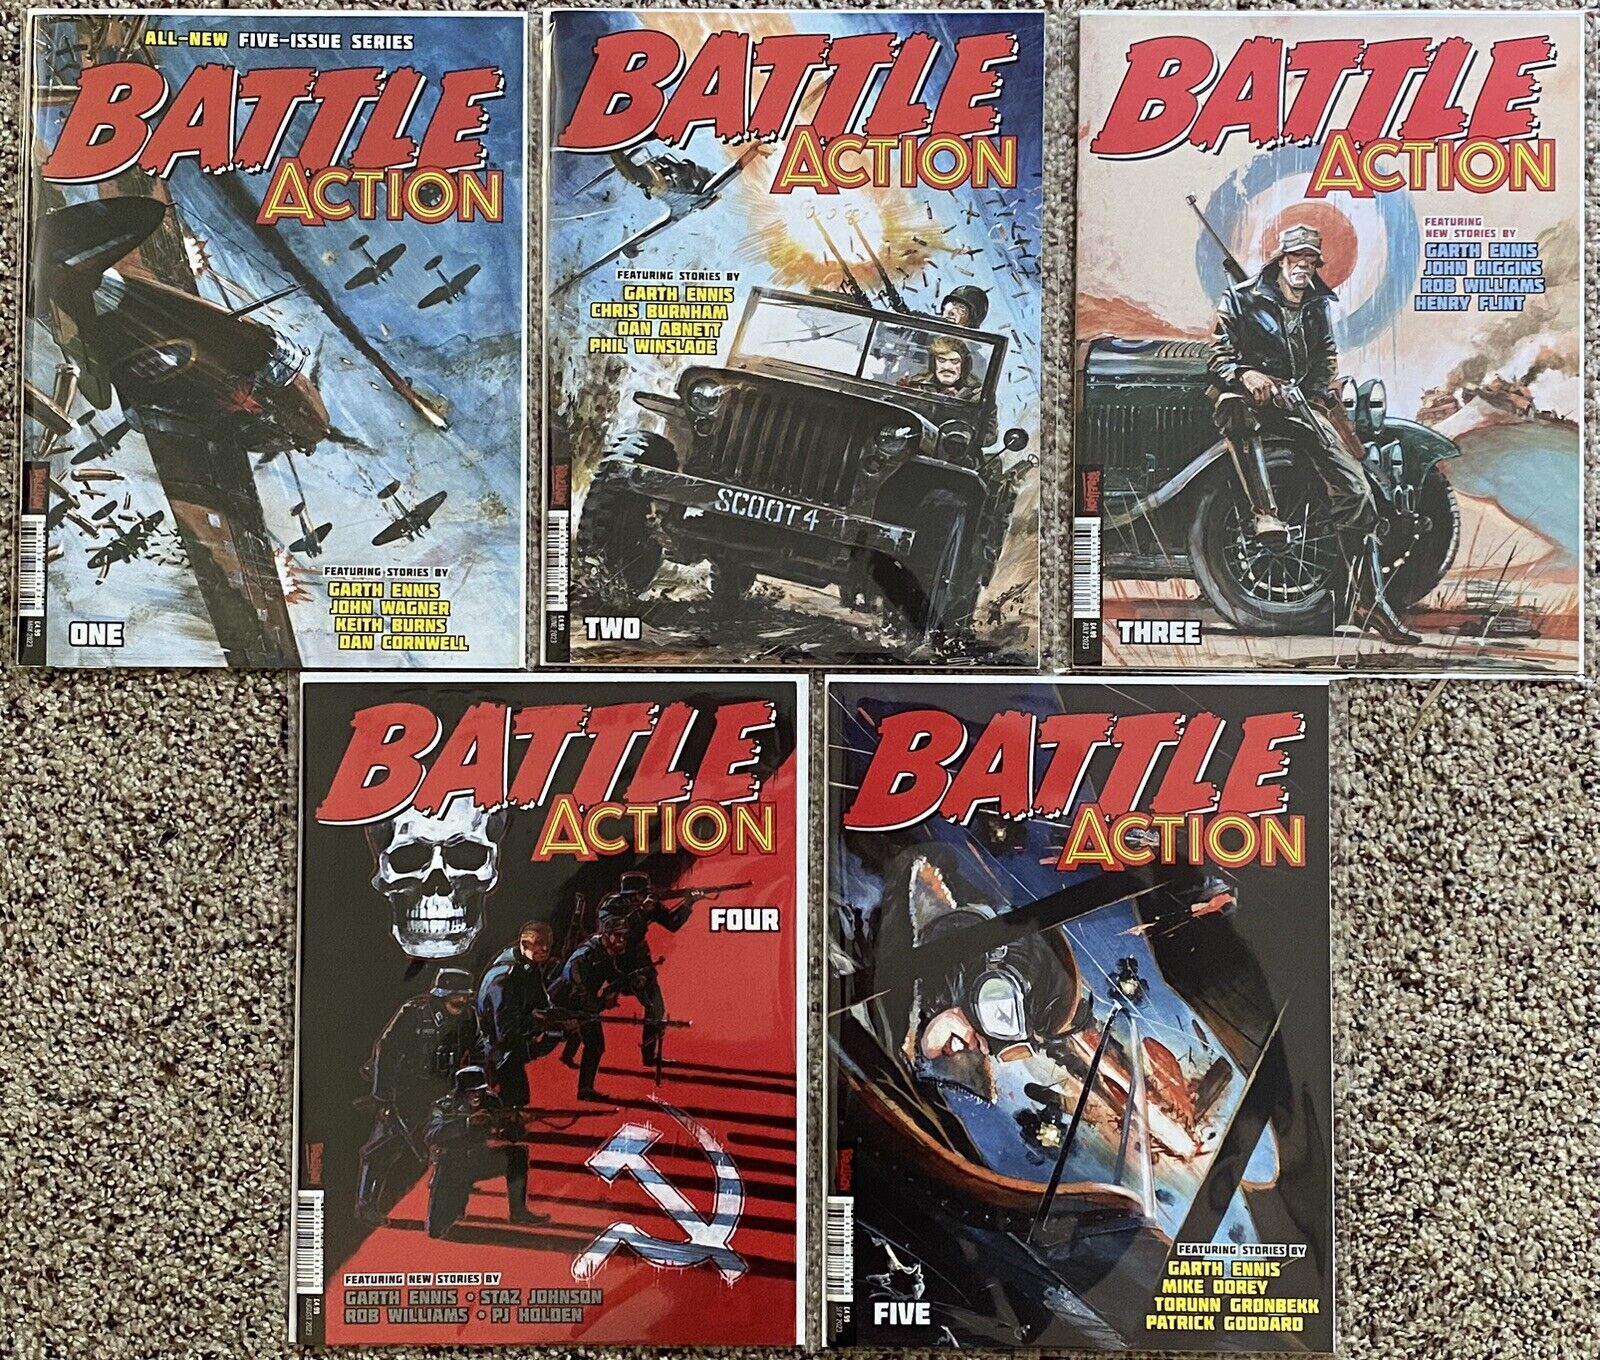 BATTLE ACTION #1-5 Complete Set - All NM 1st Prints - Garth Ennis, John Wagner